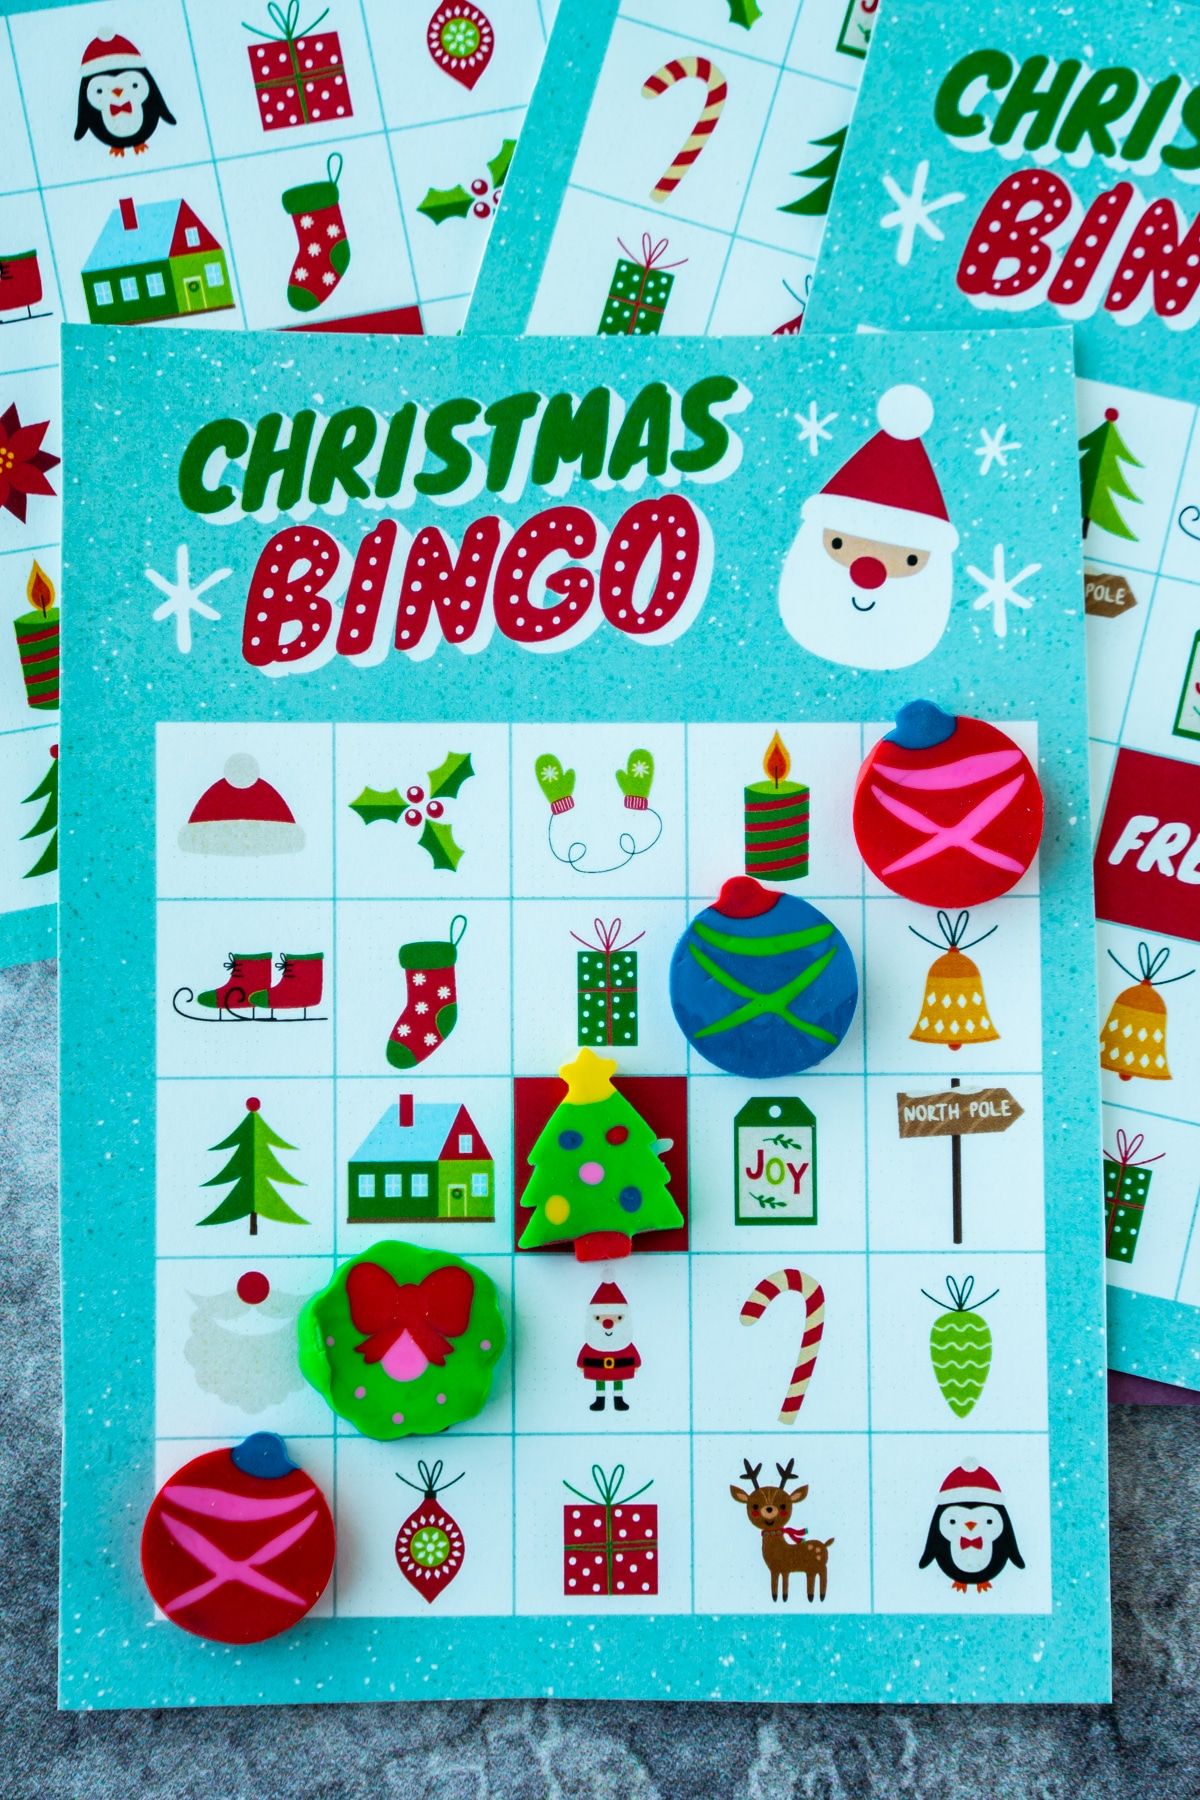 Χριστουγεννιάτικη κάρτα bingo με γόμες Χριστουγέννων σε μια γραμμή